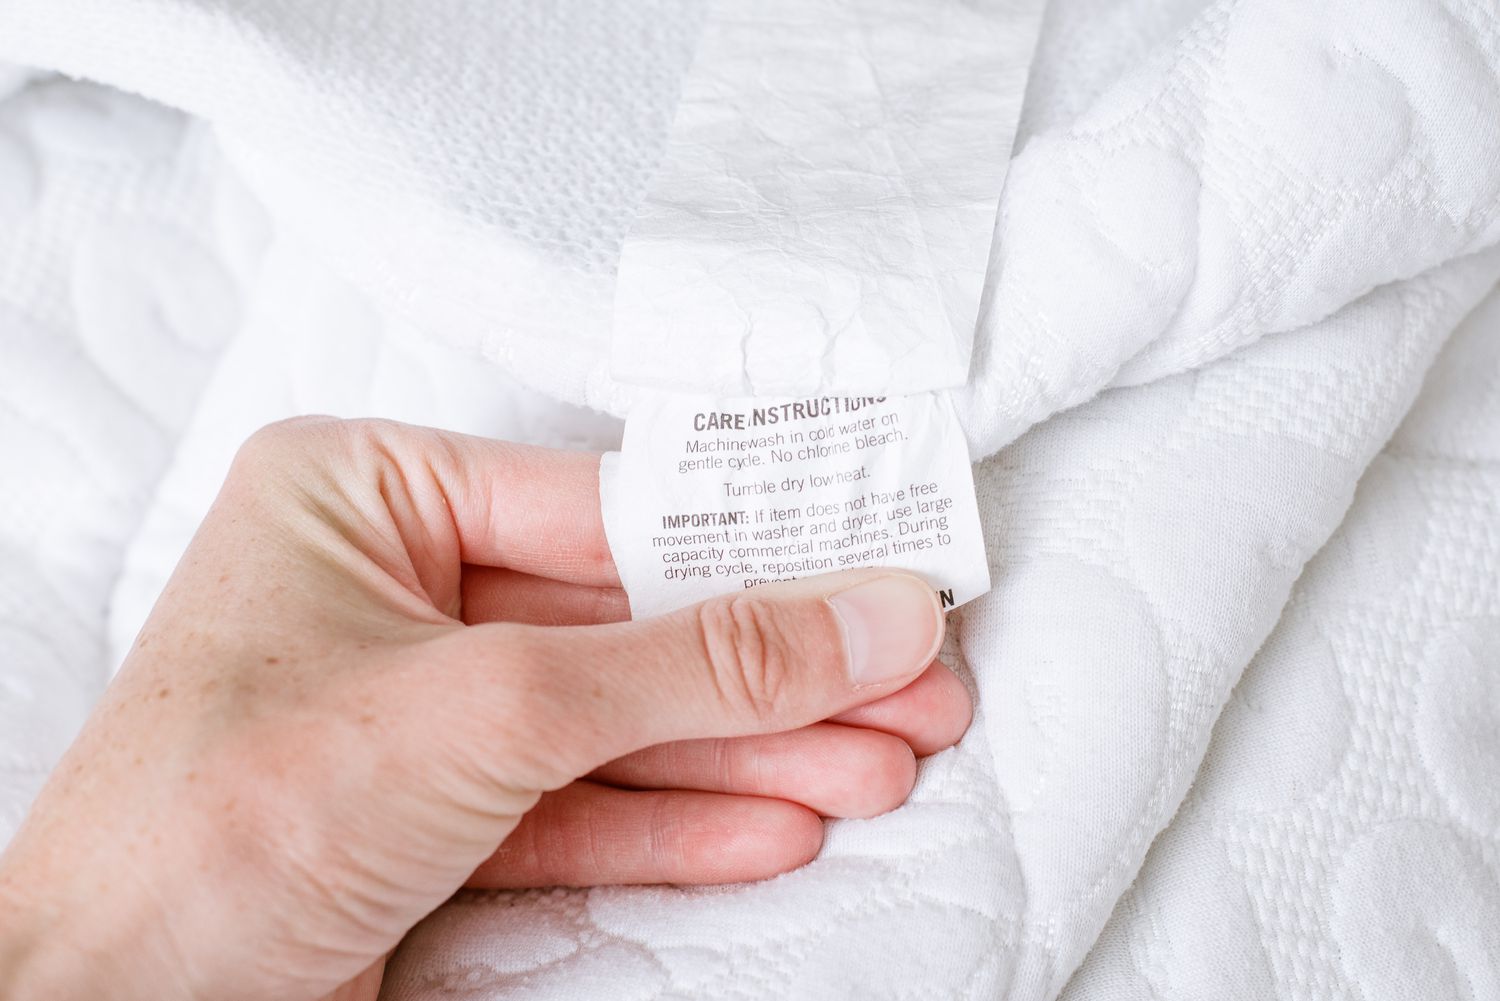 Matratzenschoner-Etikett wird vor der Reinigung überprüft